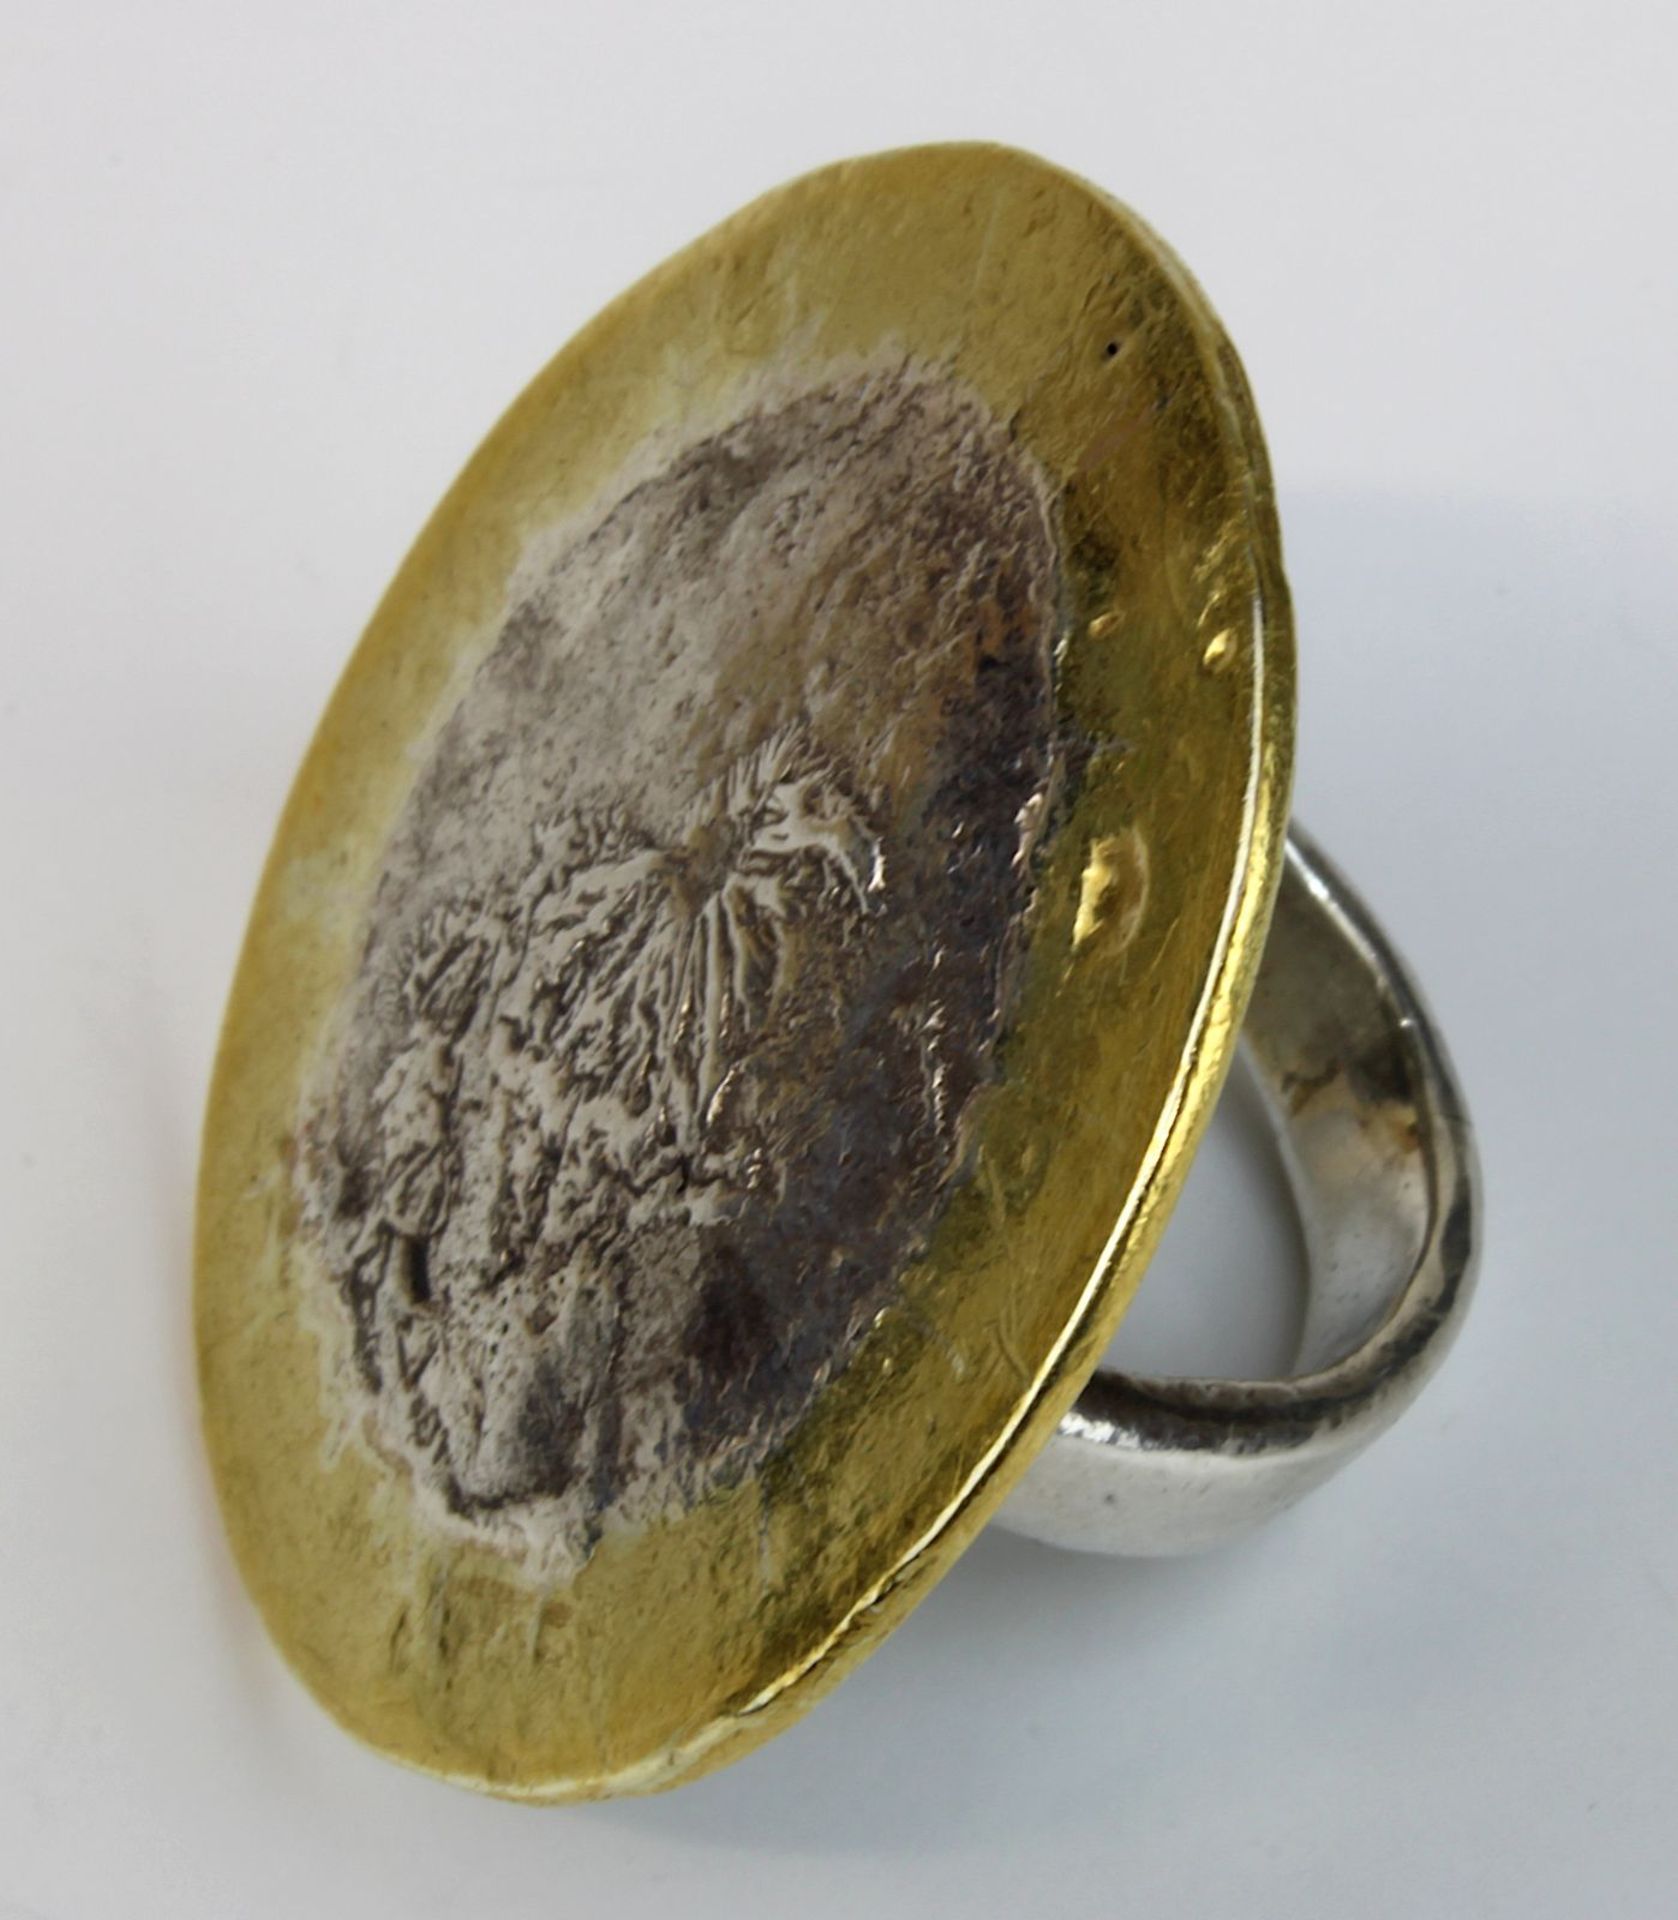 Handarbeitsring aus Gold und Silber, Goldschmiedearbeit, tellerförmiger Ringkopf aus Silber, - Bild 2 aus 2